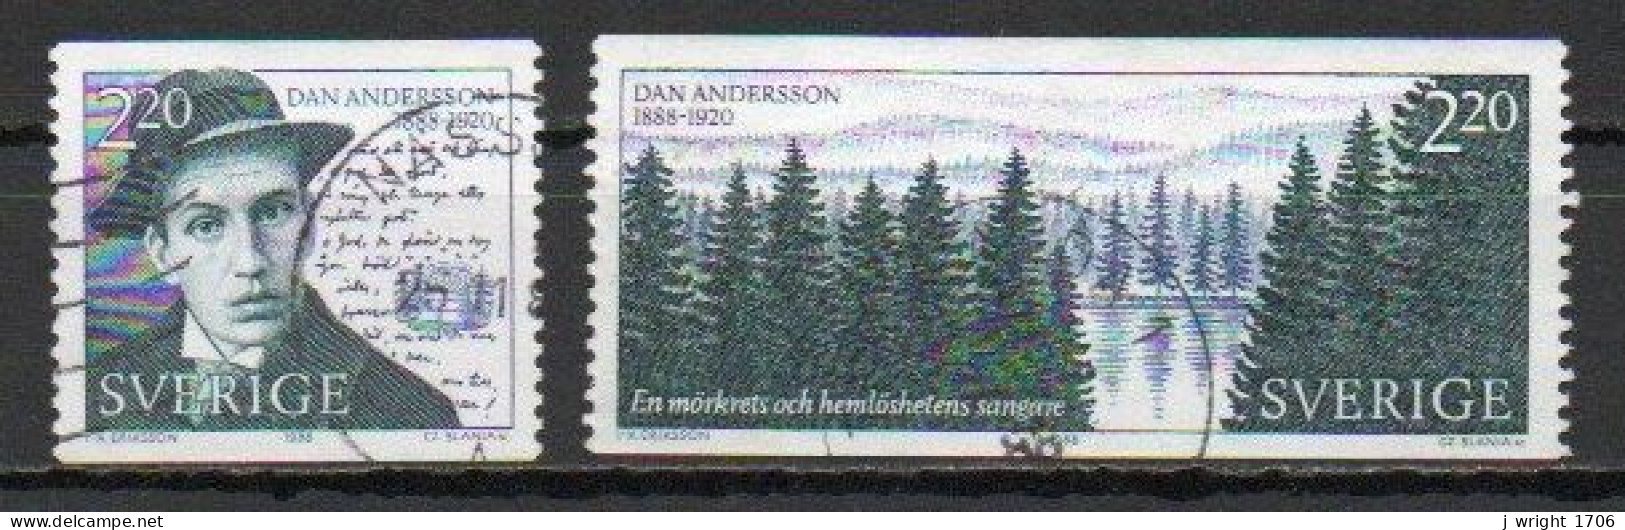 Sweden, 1988, Dan Andersson, Set, USED - Usados